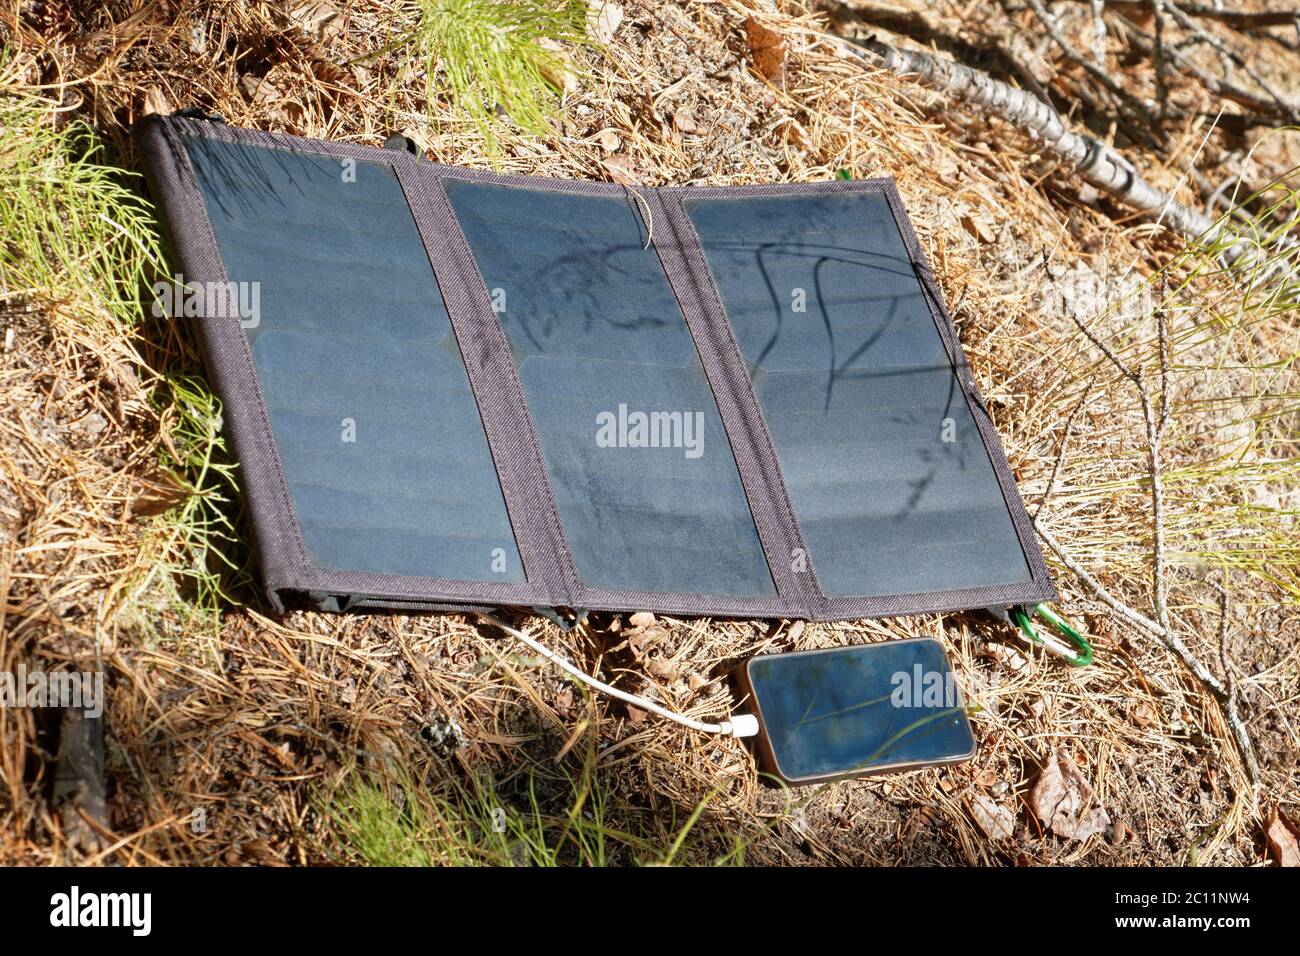 Le panneau solaire pliable se trouve sur la surface du sol forestier et charge le smartphone. Commodité pour les voyages et les longues promenades loin de traditio Banque D'Images